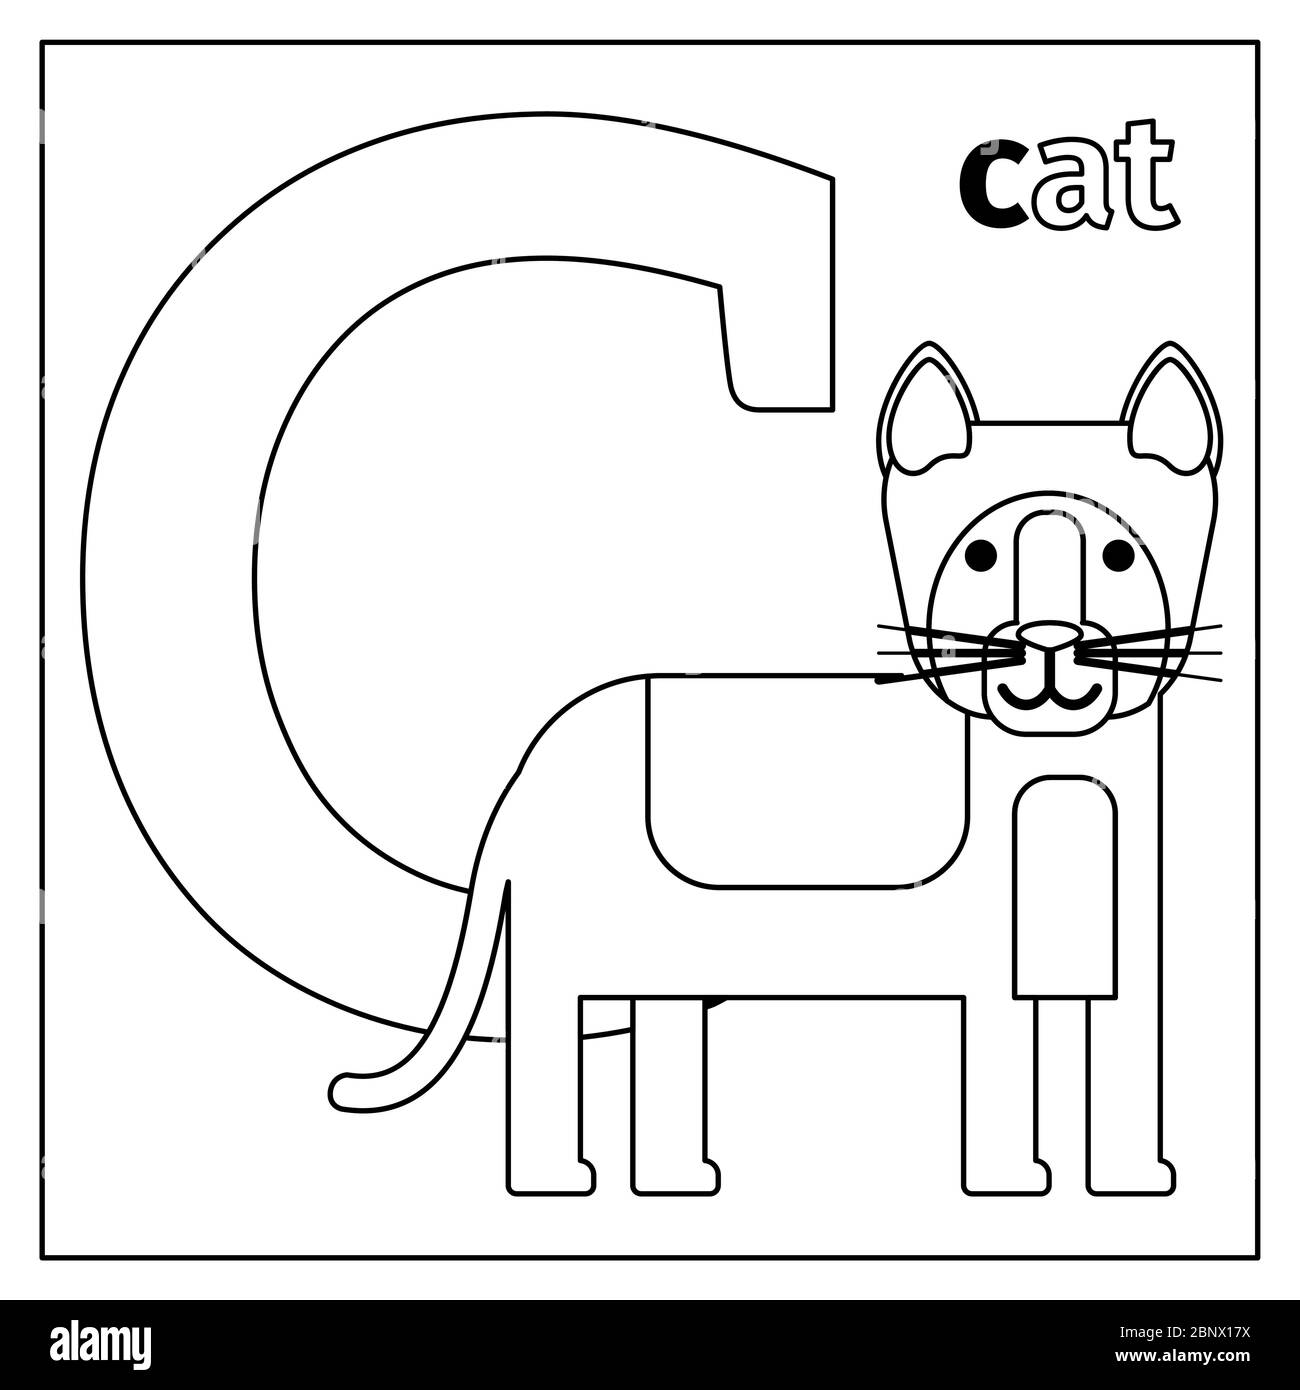 Malvorlagen oder Karten für Kinder mit englischen Tieren Zoo Alphabet. Vektorgrafik Katze, Buchstabe C Stock Vektor